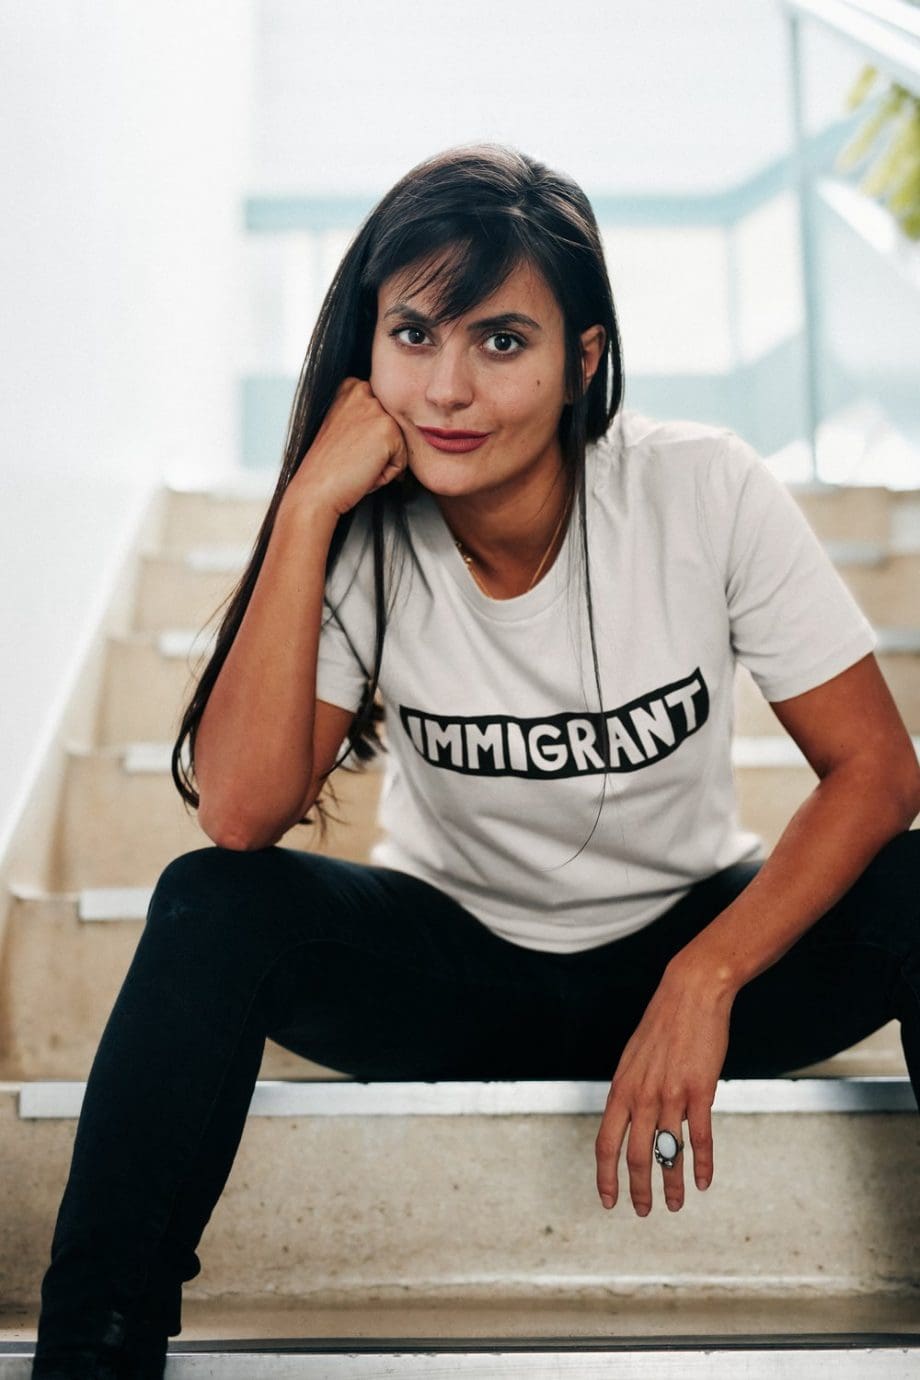 White Immigrant T-shirt